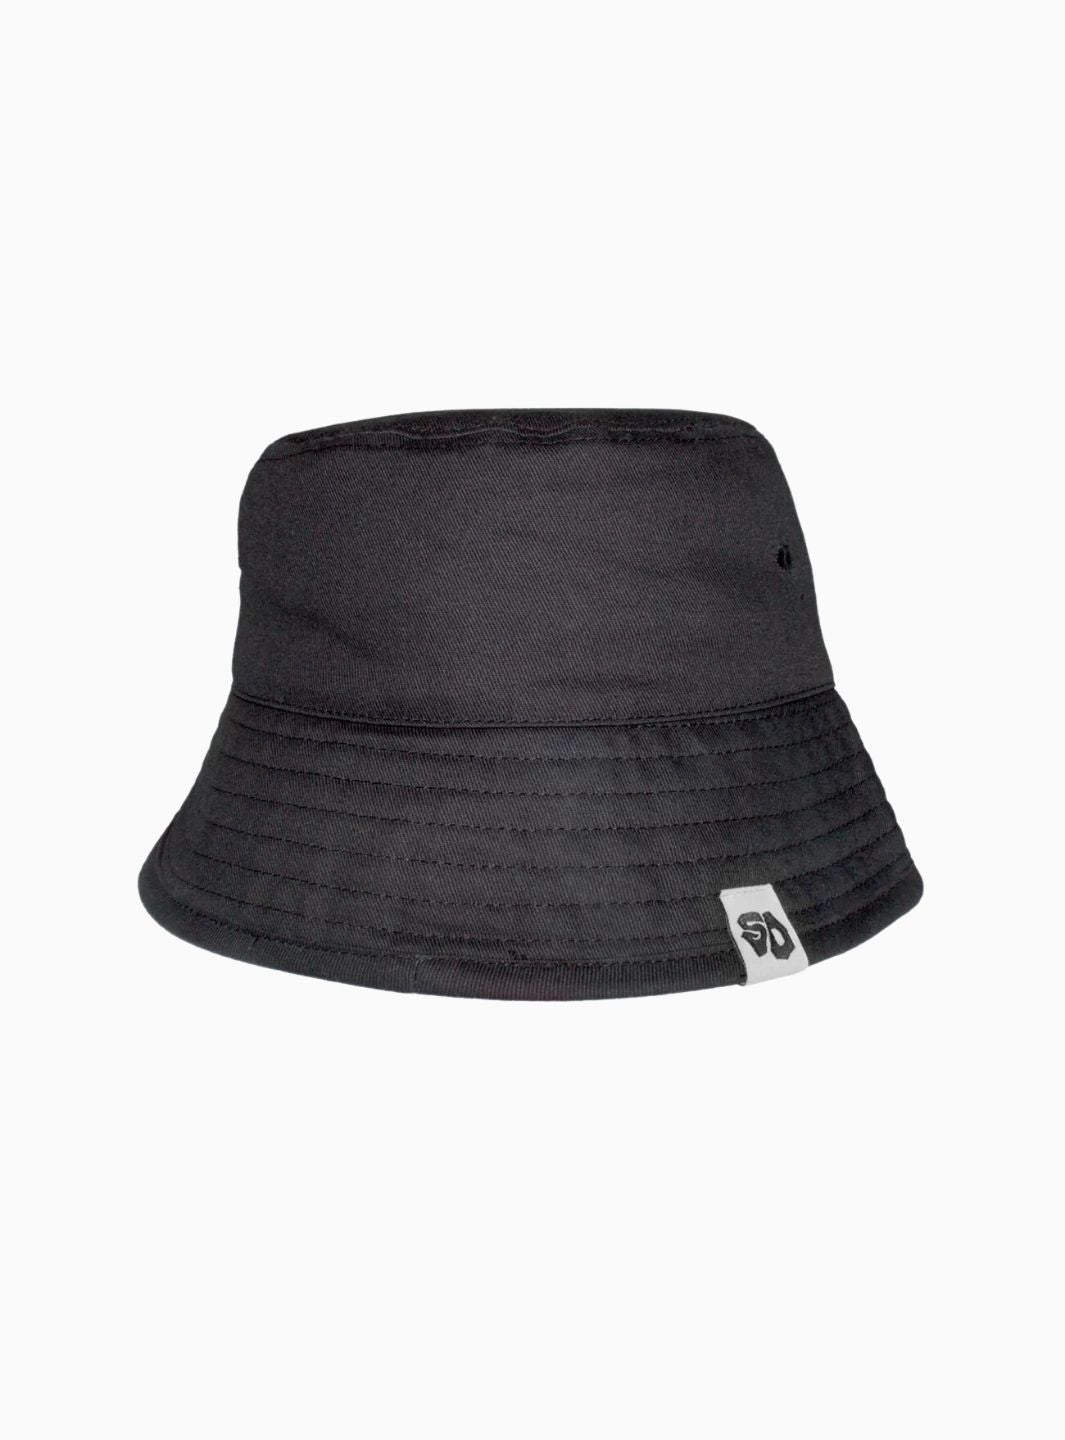 Street Dealer Bucket Cap Black